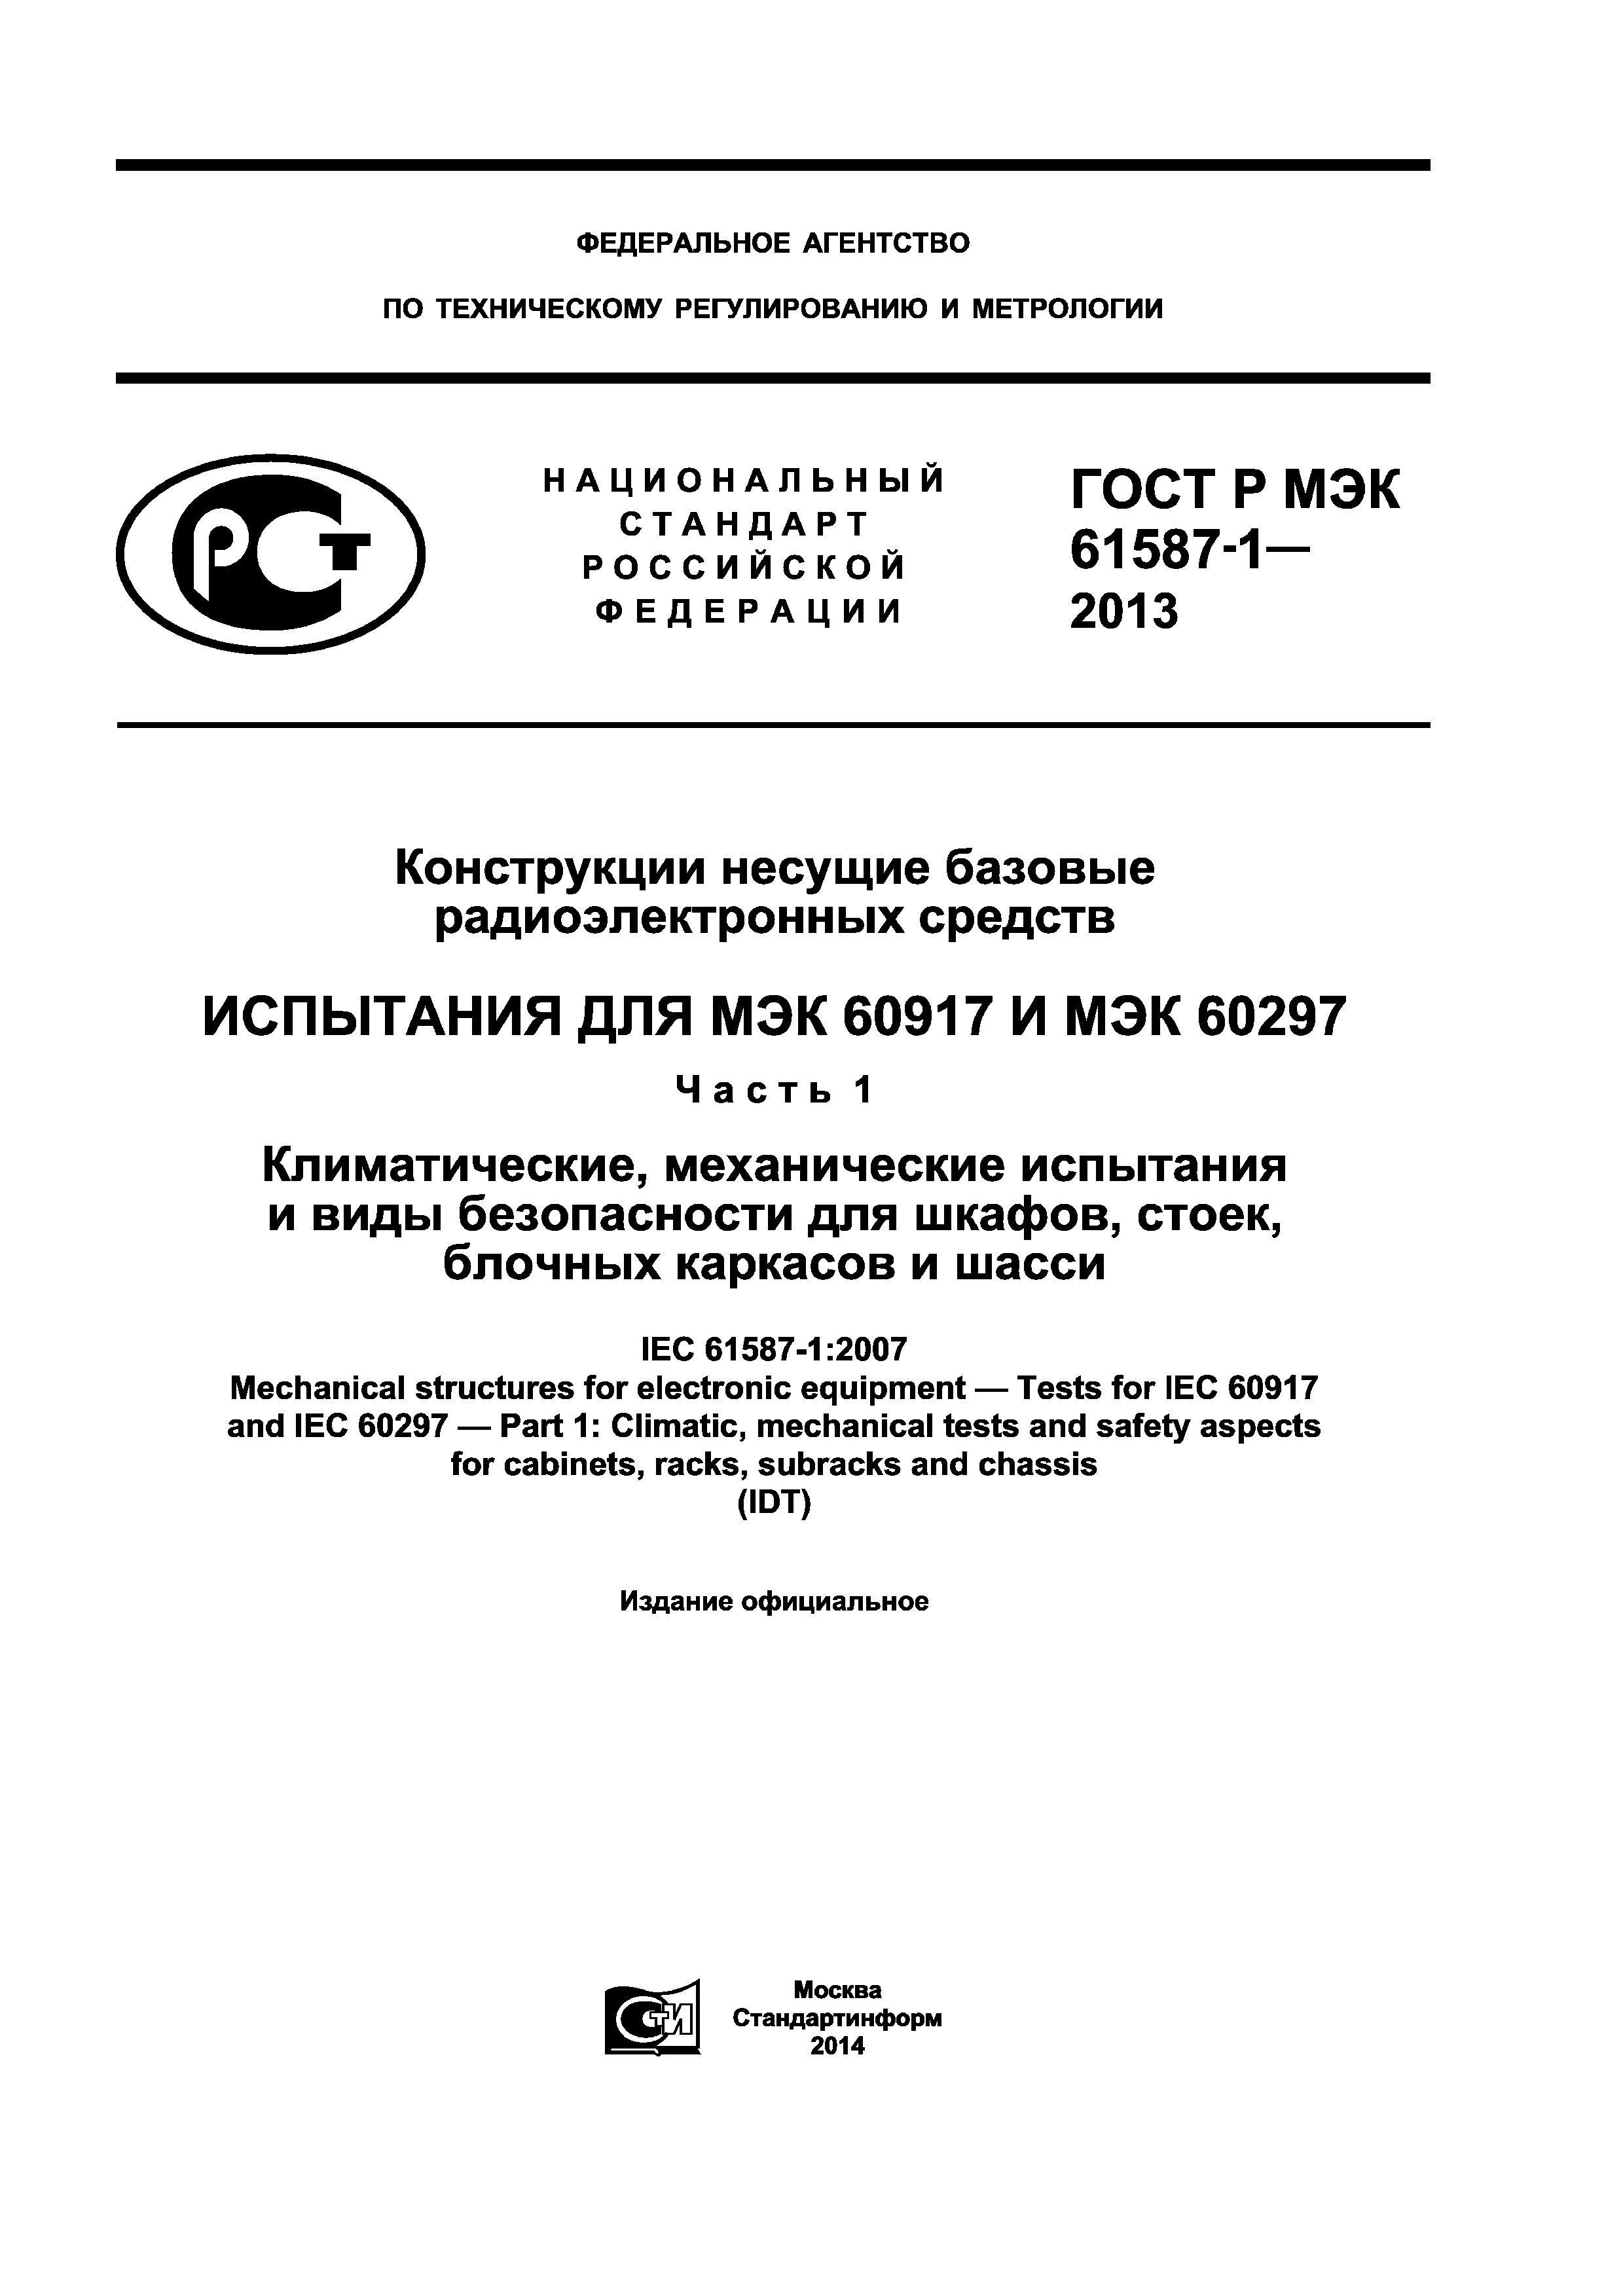 ГОСТ Р МЭК 61587-1-2013